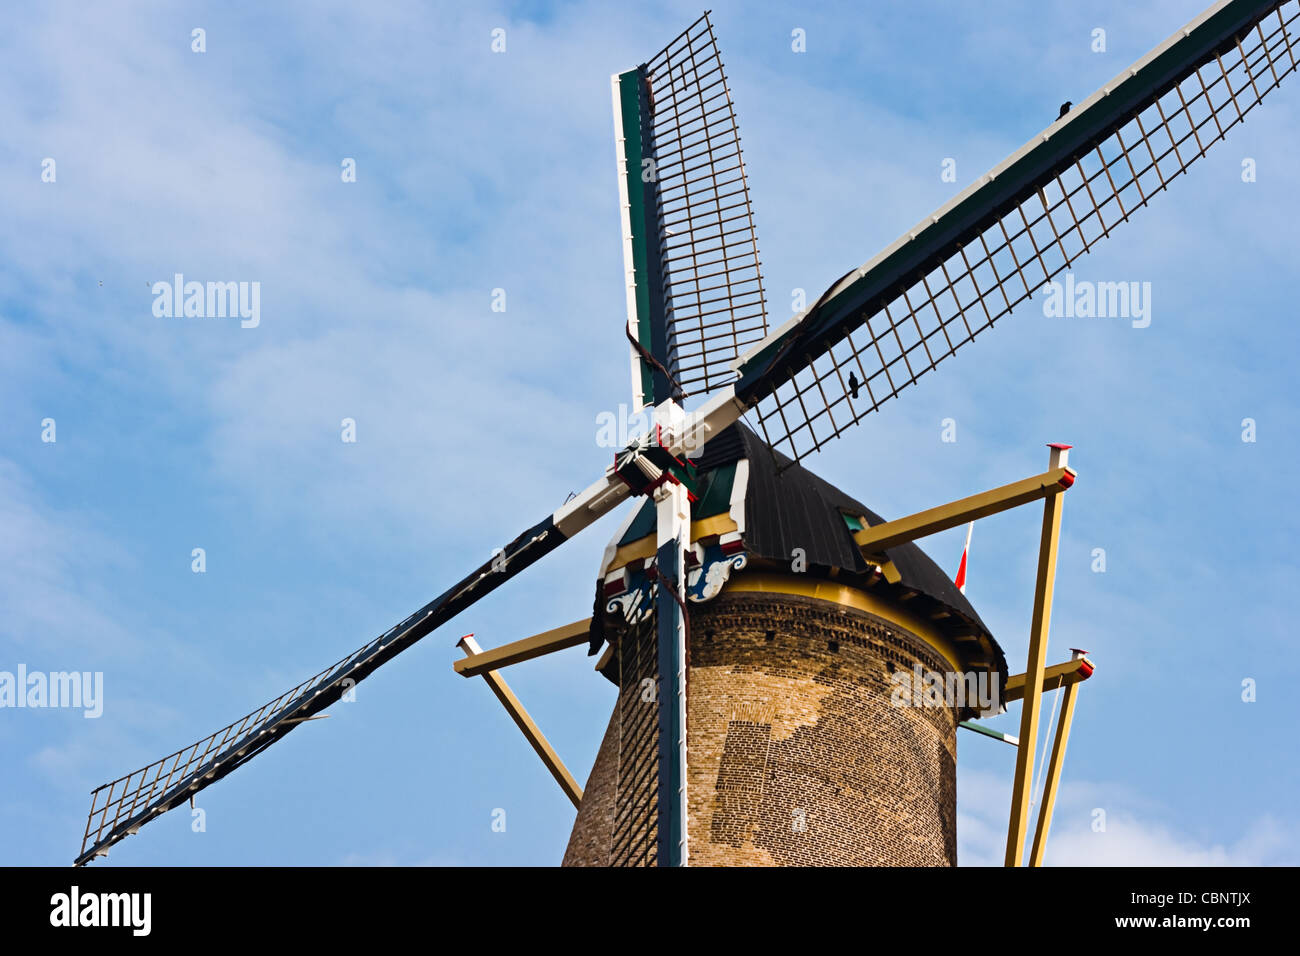 Aspas de molino de viento holandés histórico todavía en uso para moler el maíz con fondo de cielo azul Foto de stock